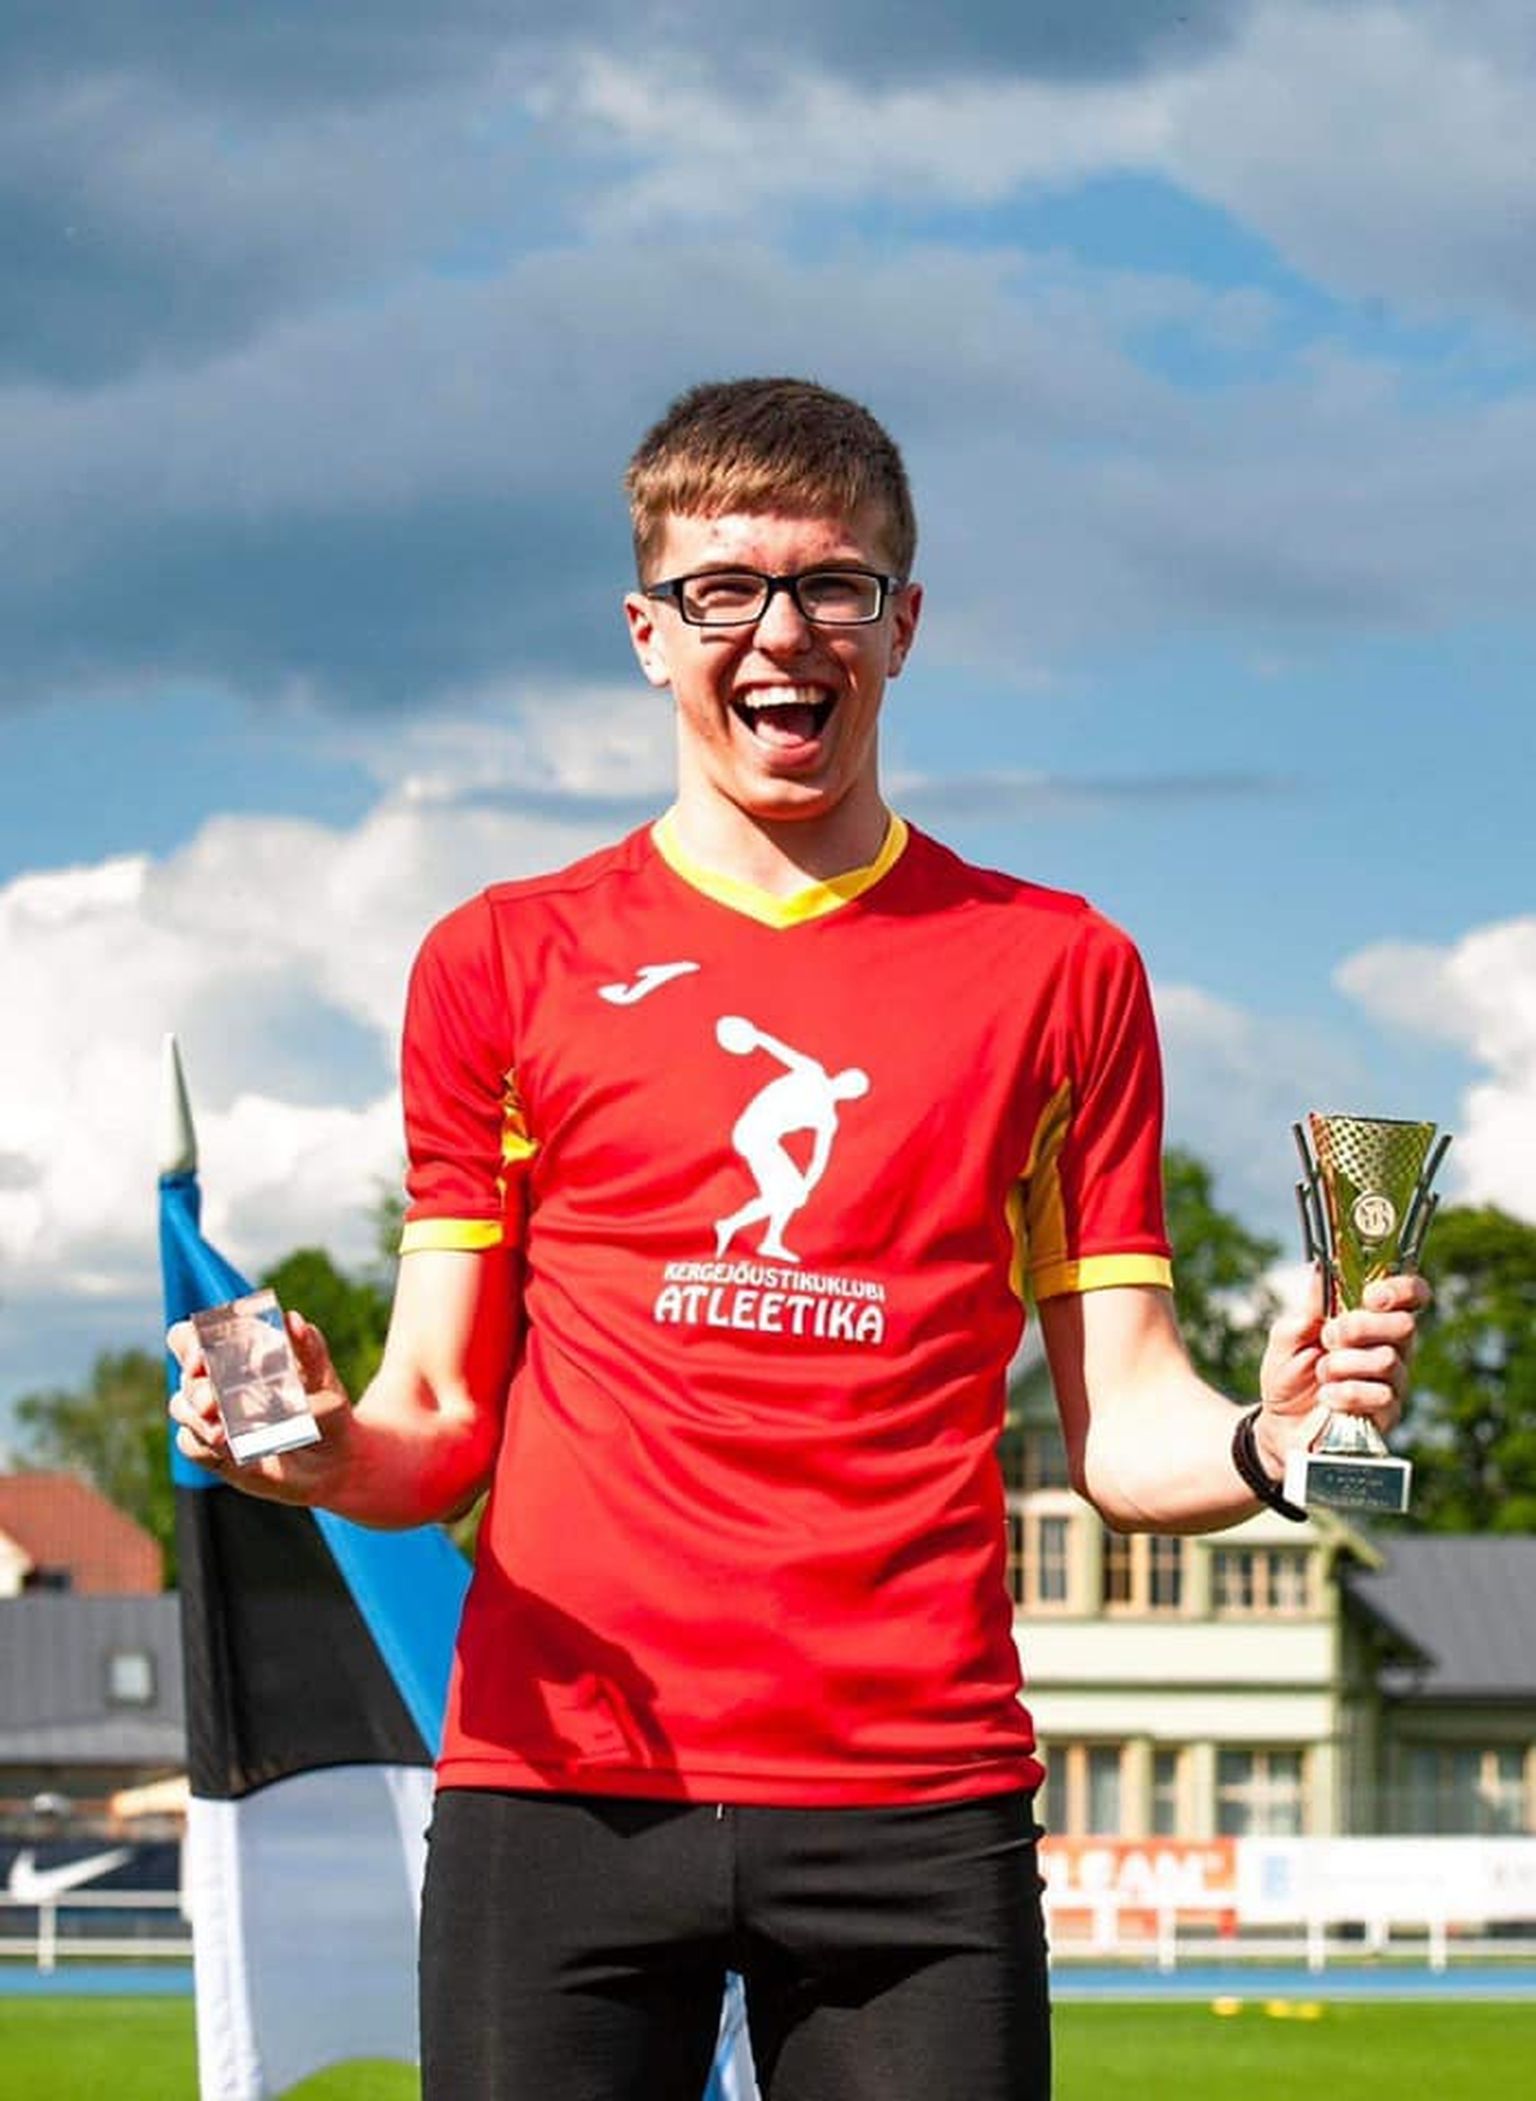 17aastane Viktor Morozov on viimastel aastatel kolmikhüppes pikkade sammudega edasi arenenud ja nüüd tuli juba ka esimene Eesti meistritiitel täiskasvanute seas.